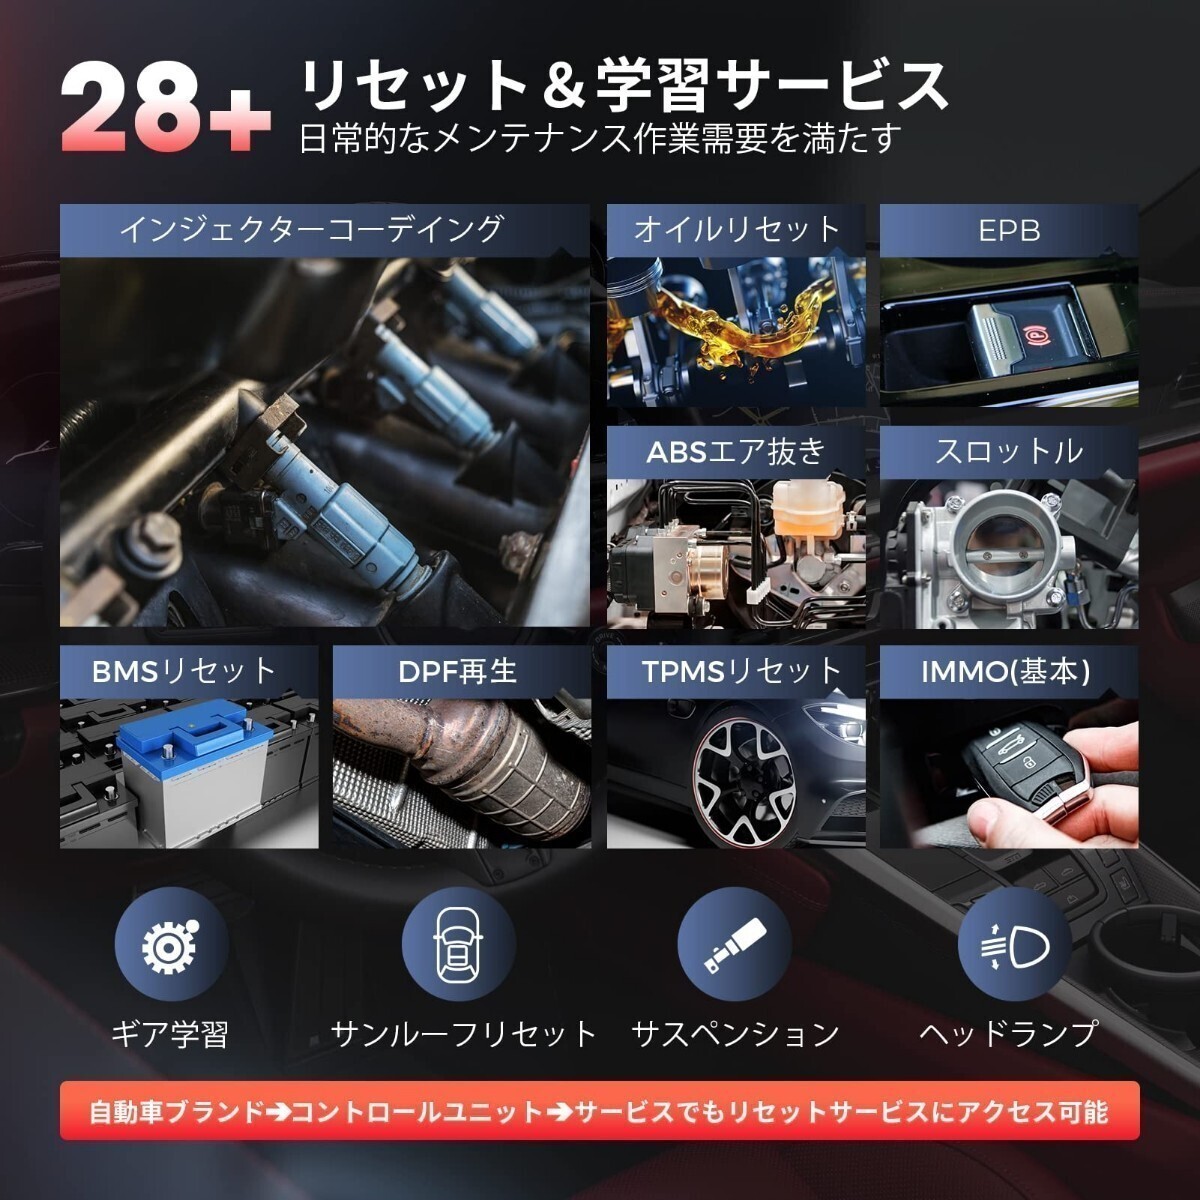 新品・日本語化済モデル 最新版 Autel MK808S OBD2 診断機 輸入車 国産車 軽自動車 ハイブリッド スキャンツール アクティブテスト DPF再生の画像4